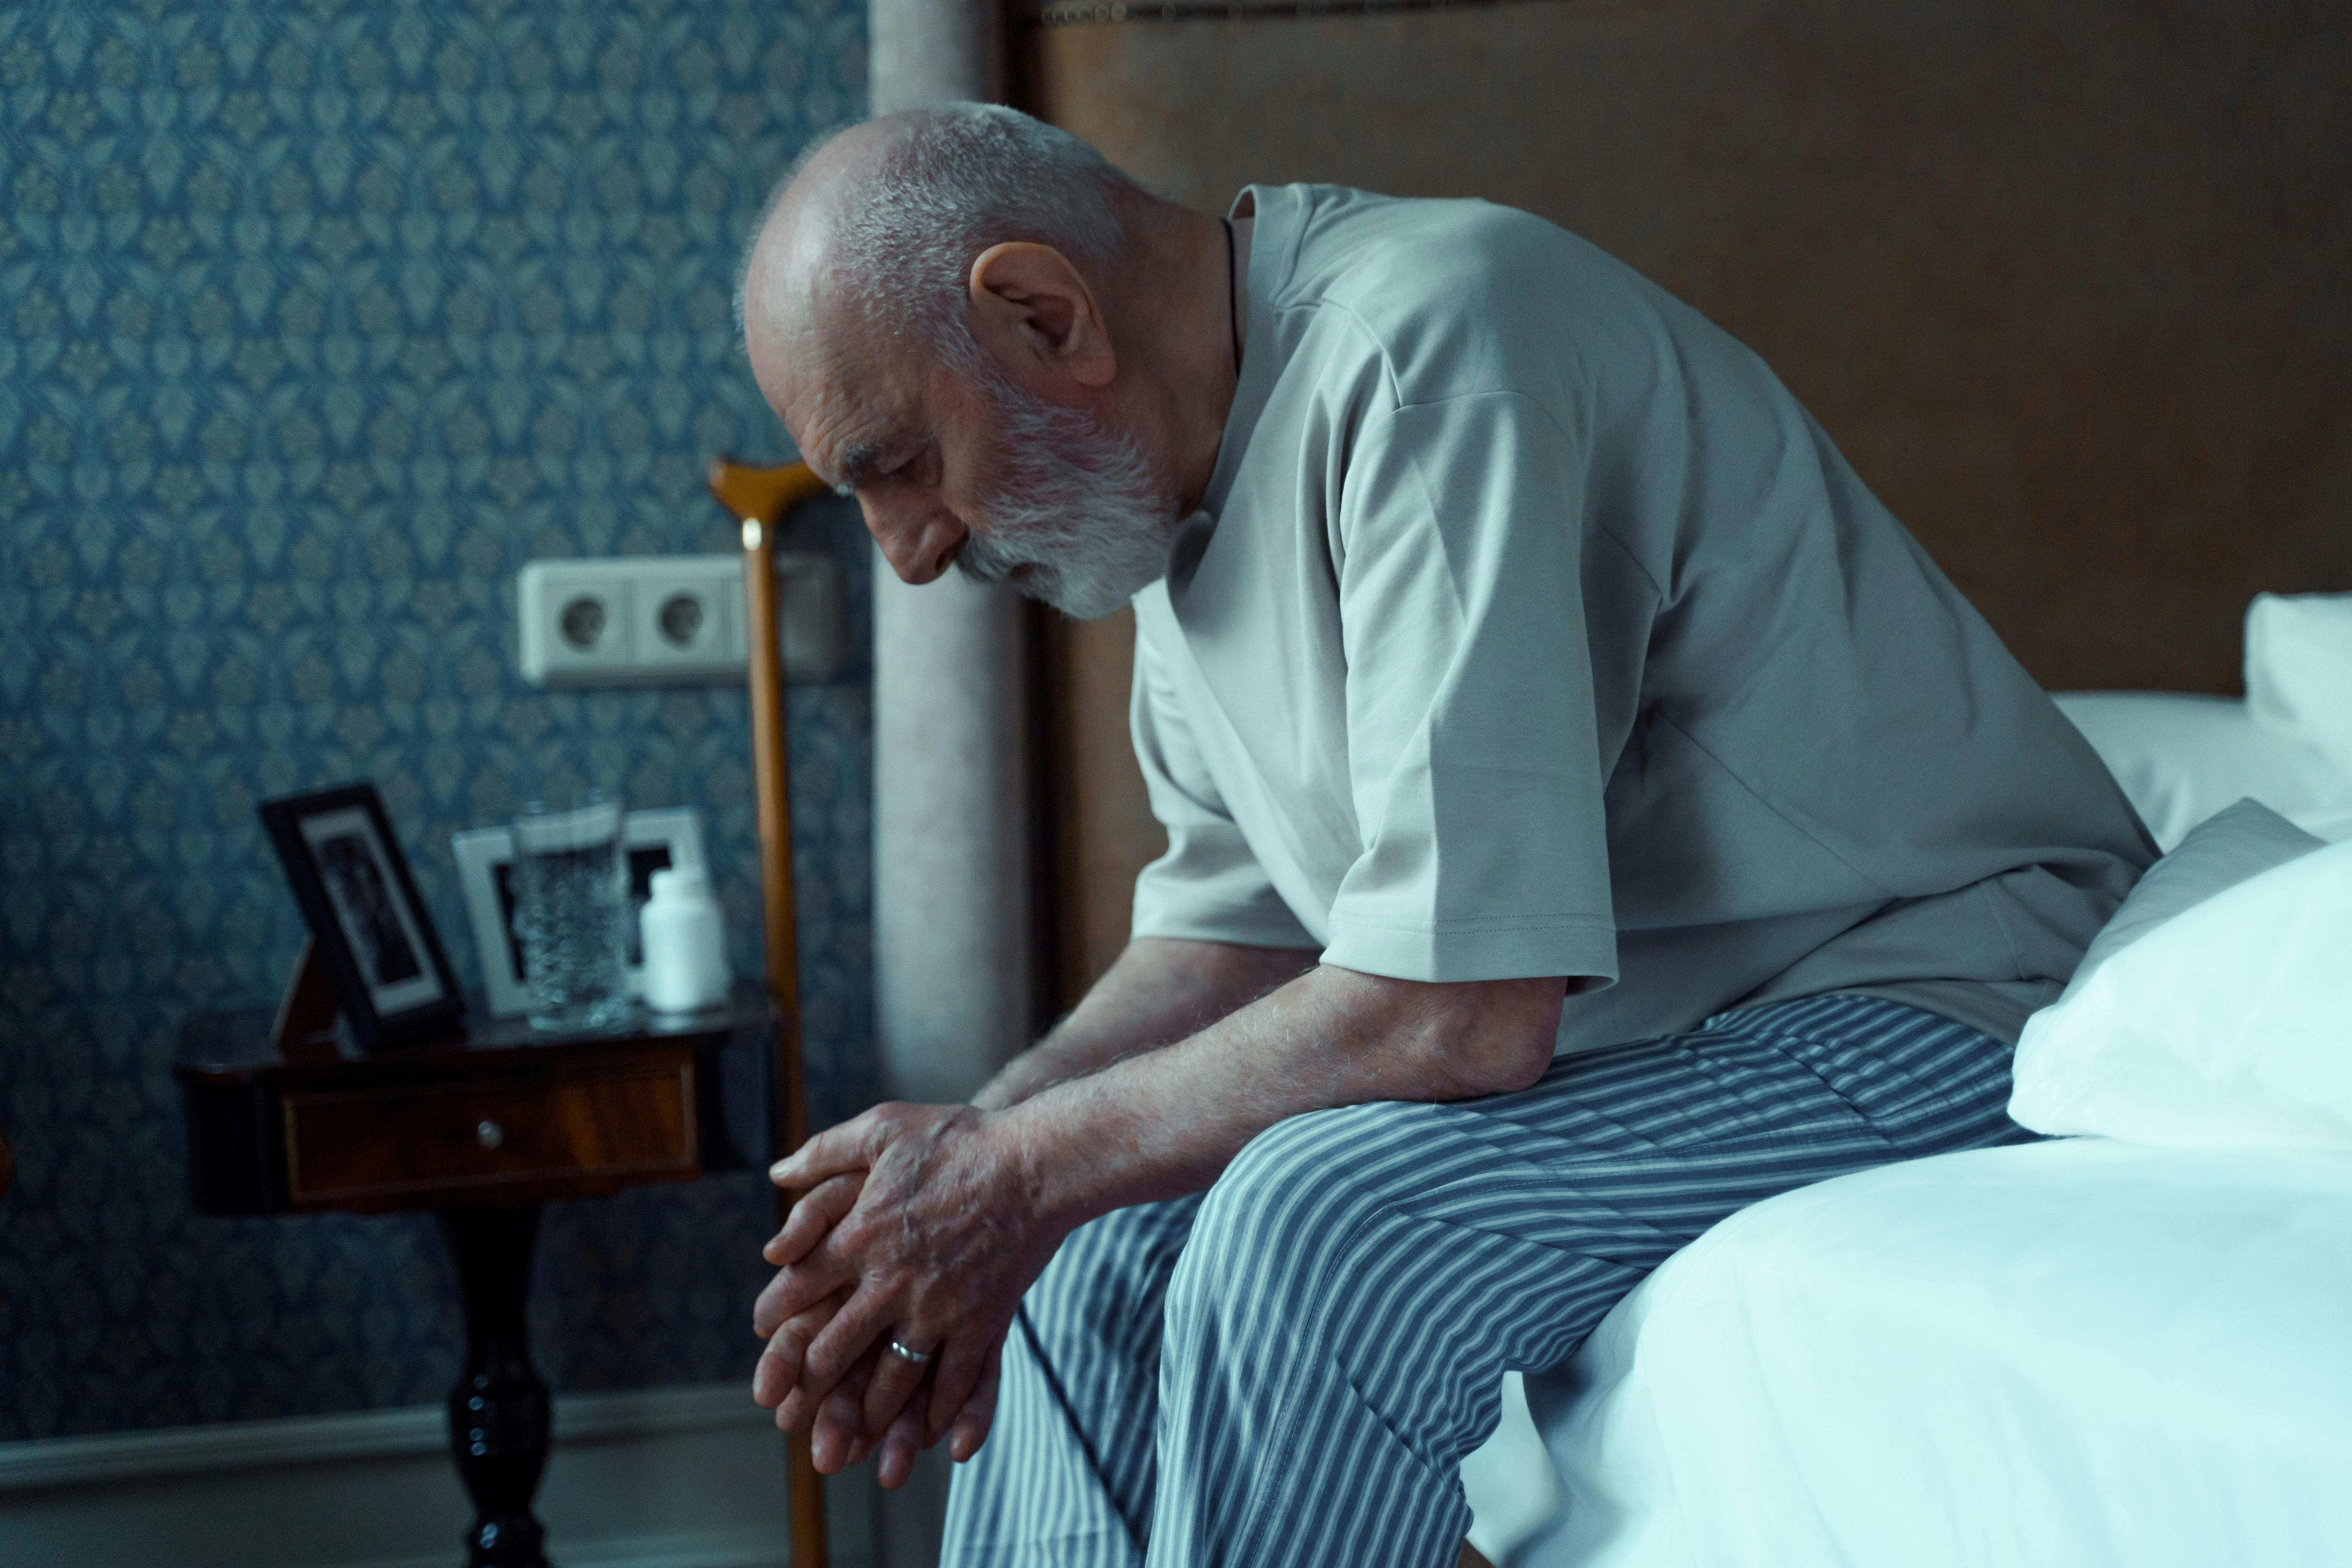 Un hombre de aspecto enfermo sentado en una cama | Fuente: Pexels